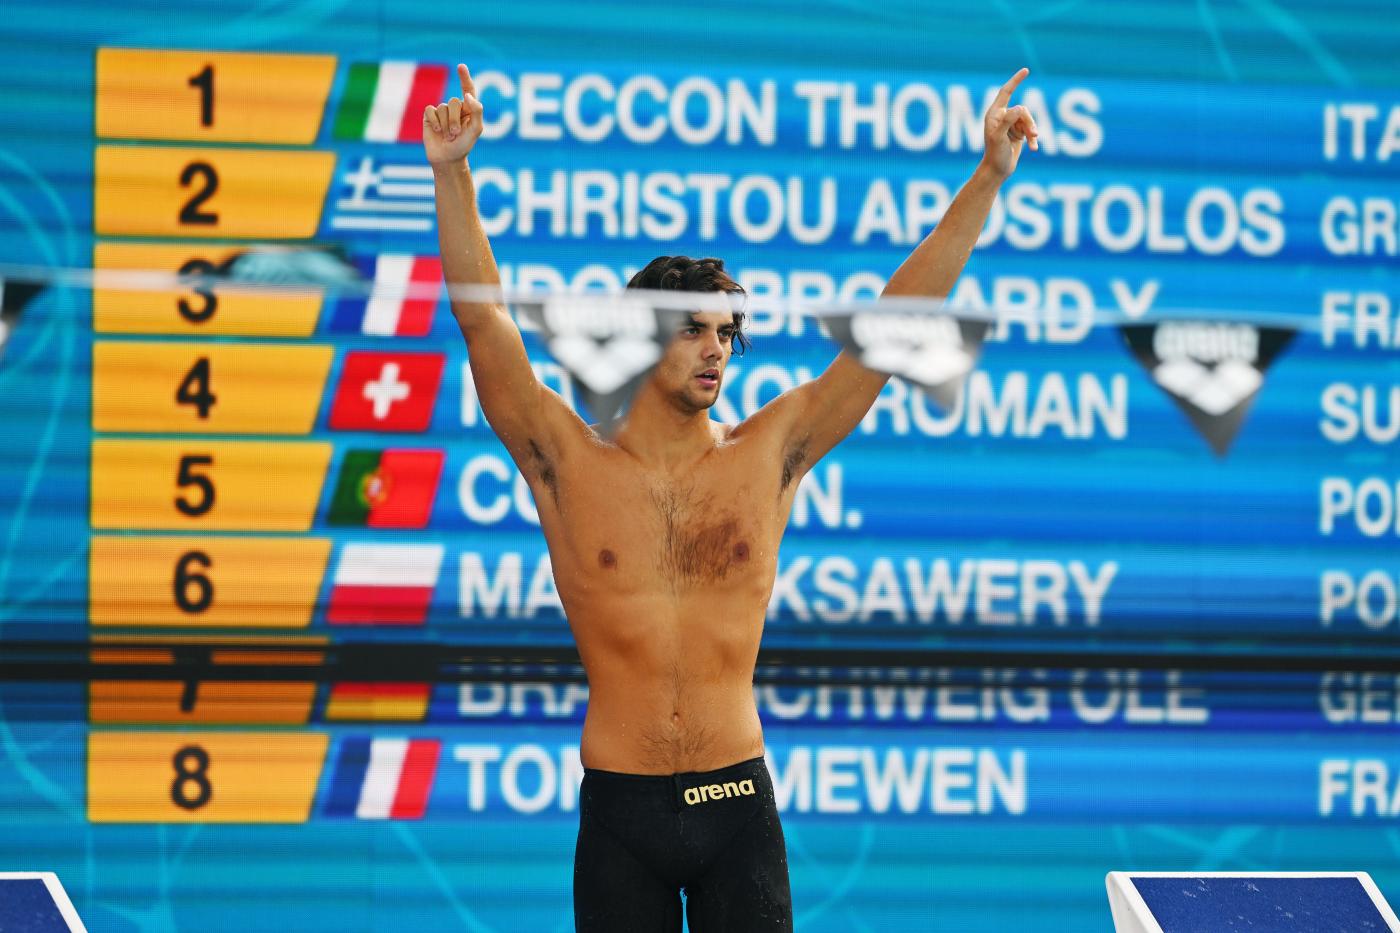 Nuoto, risultati 17 agosto: ITALIA PADRONA! Ori Ceccon e 4×100 mista, pioggia di medaglie e apoteosi storica nel medagliere!